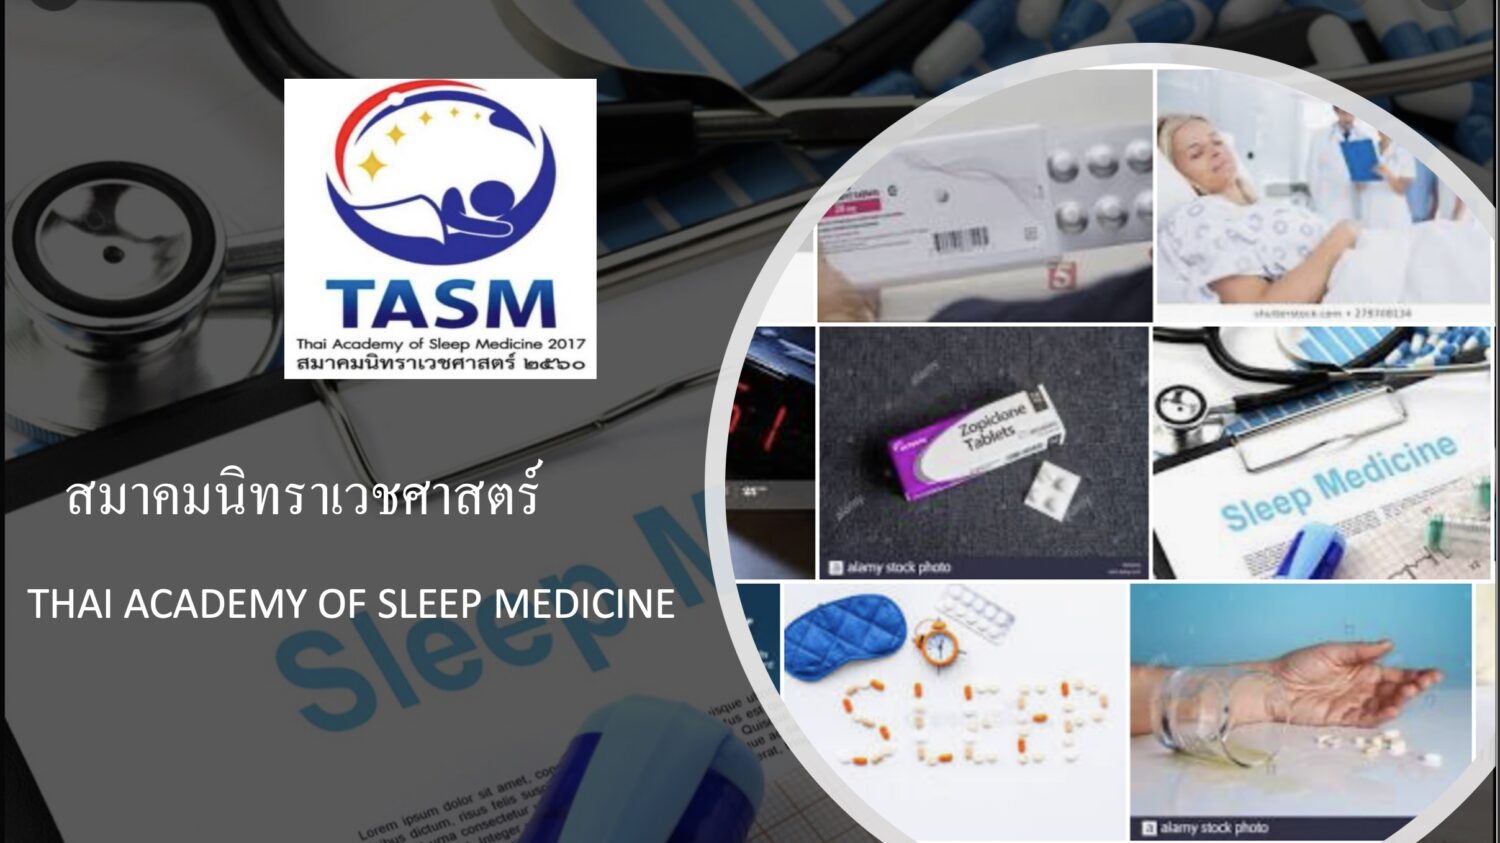 สมาคมนิทราเวชศาสตร์.   Thai Academy of Sleep Medicine